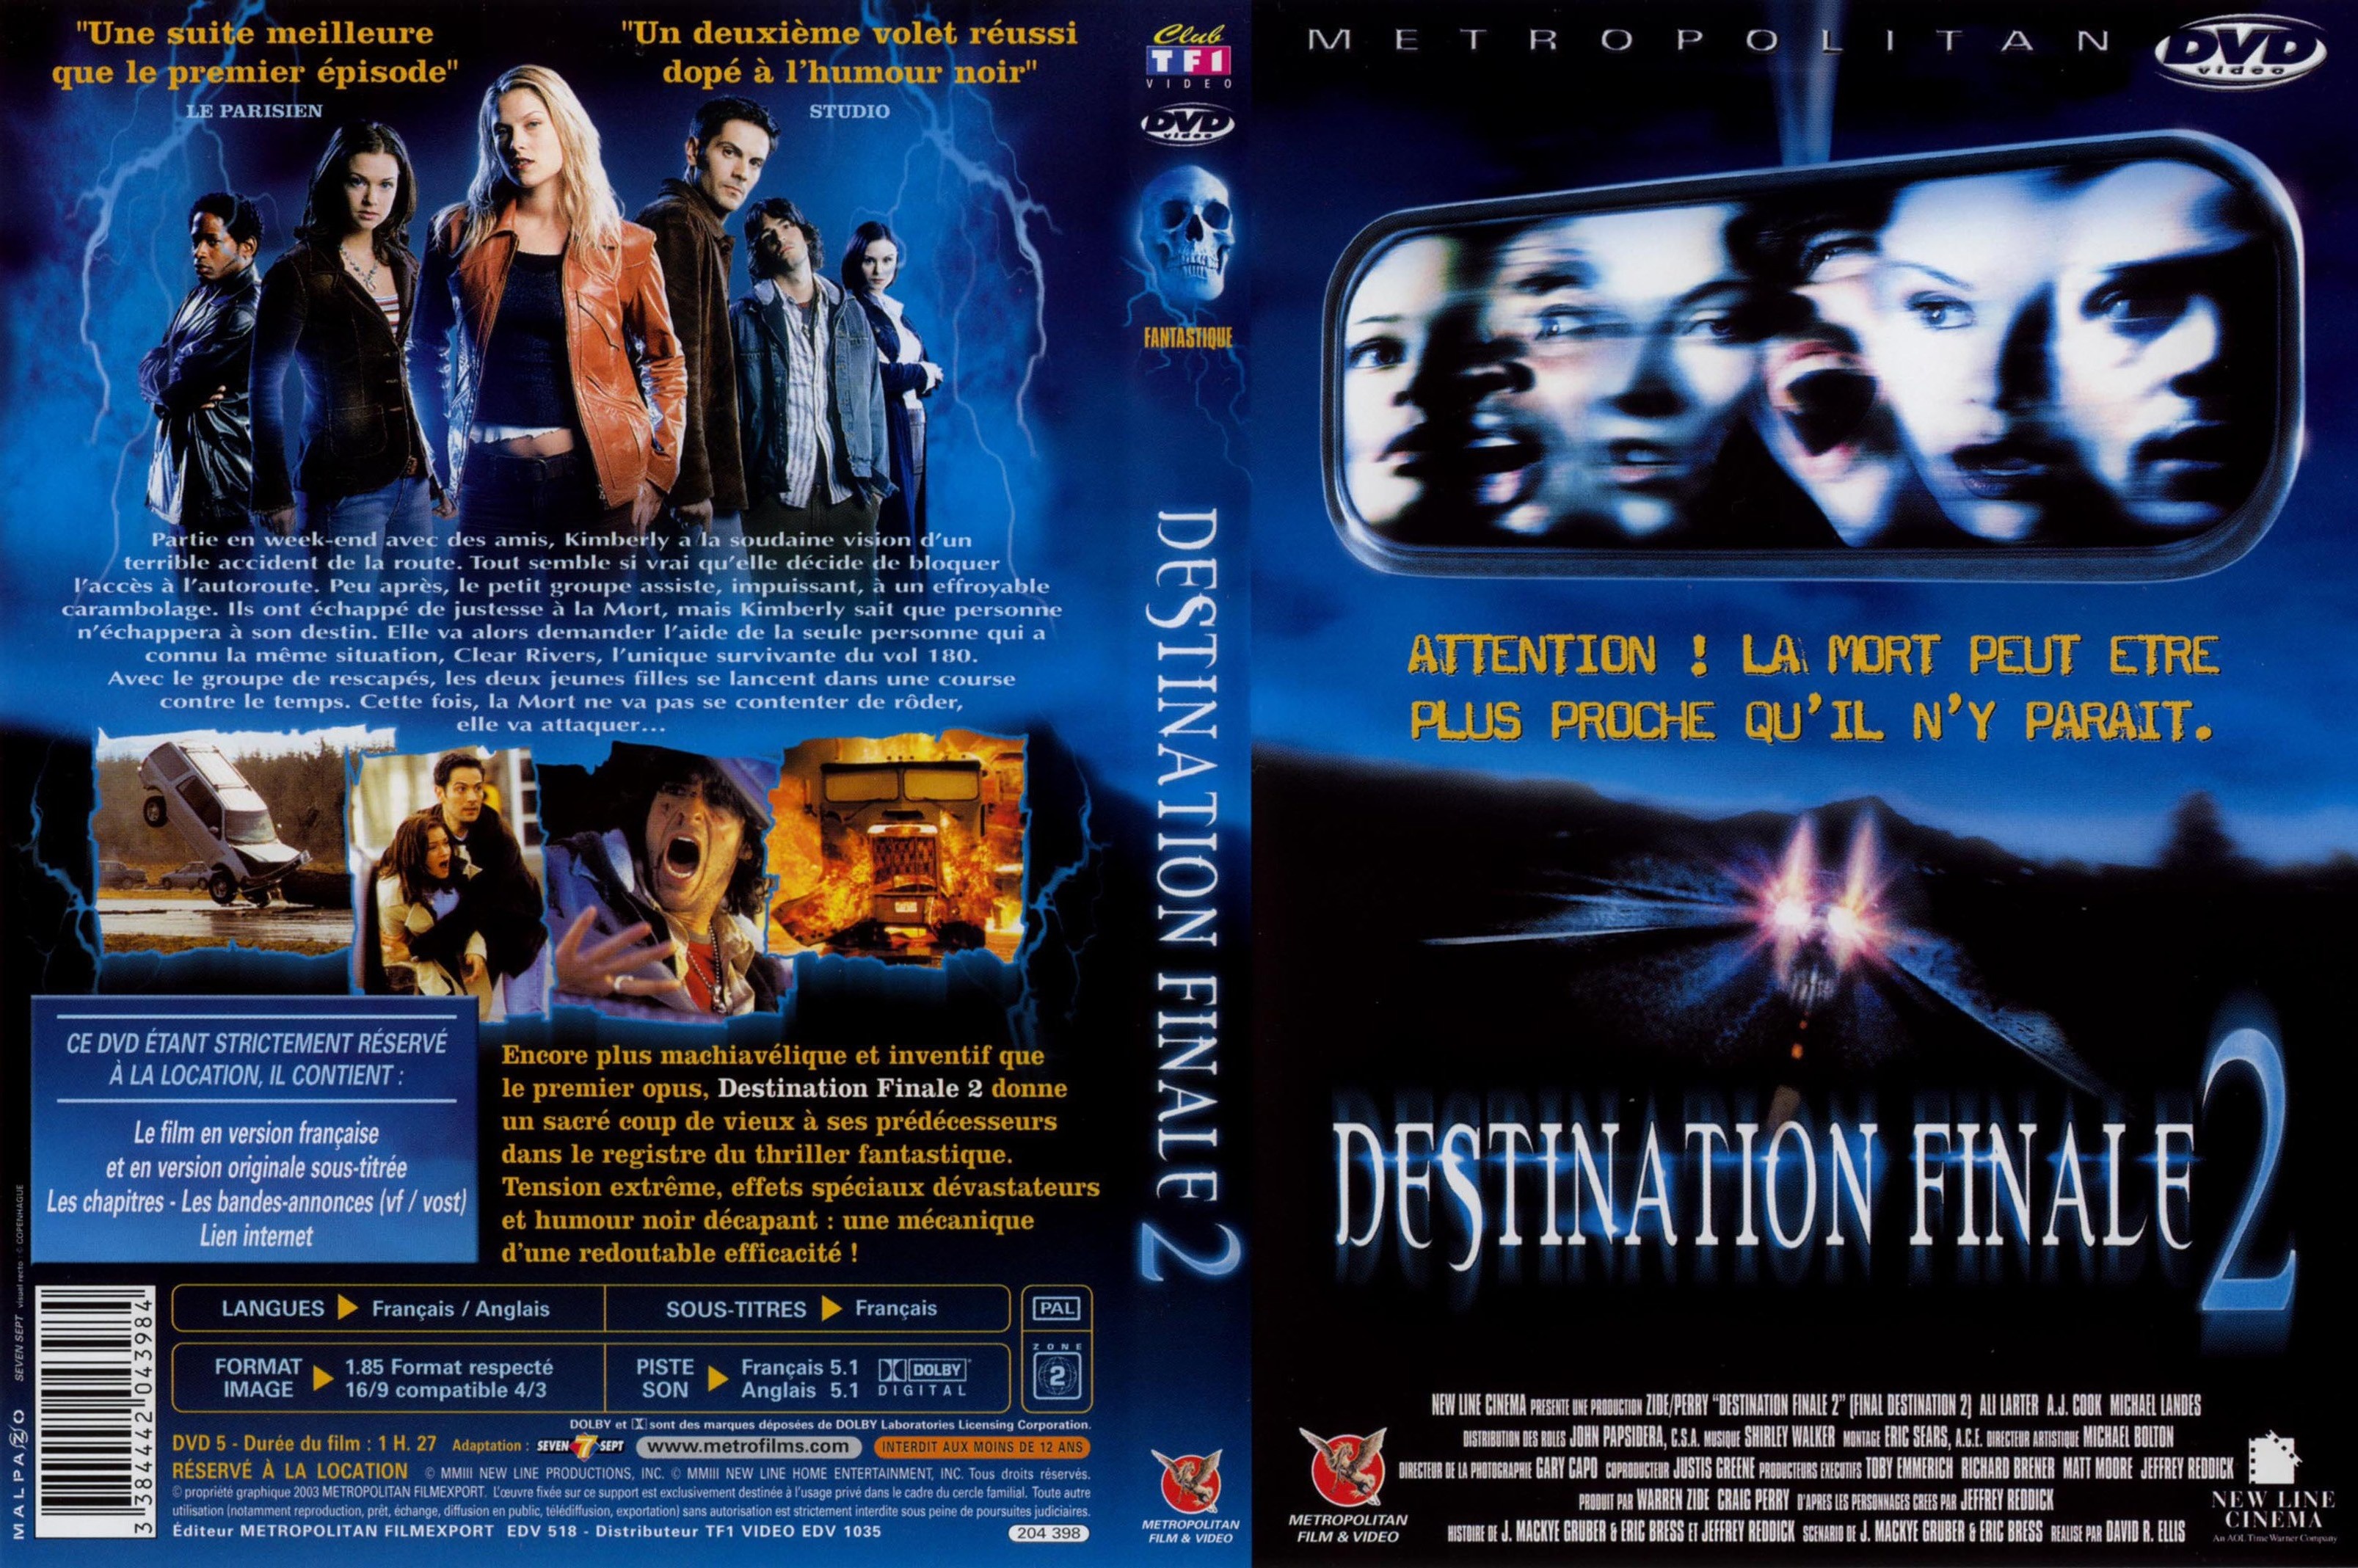 Jaquette DVD Destination finale 2 v2